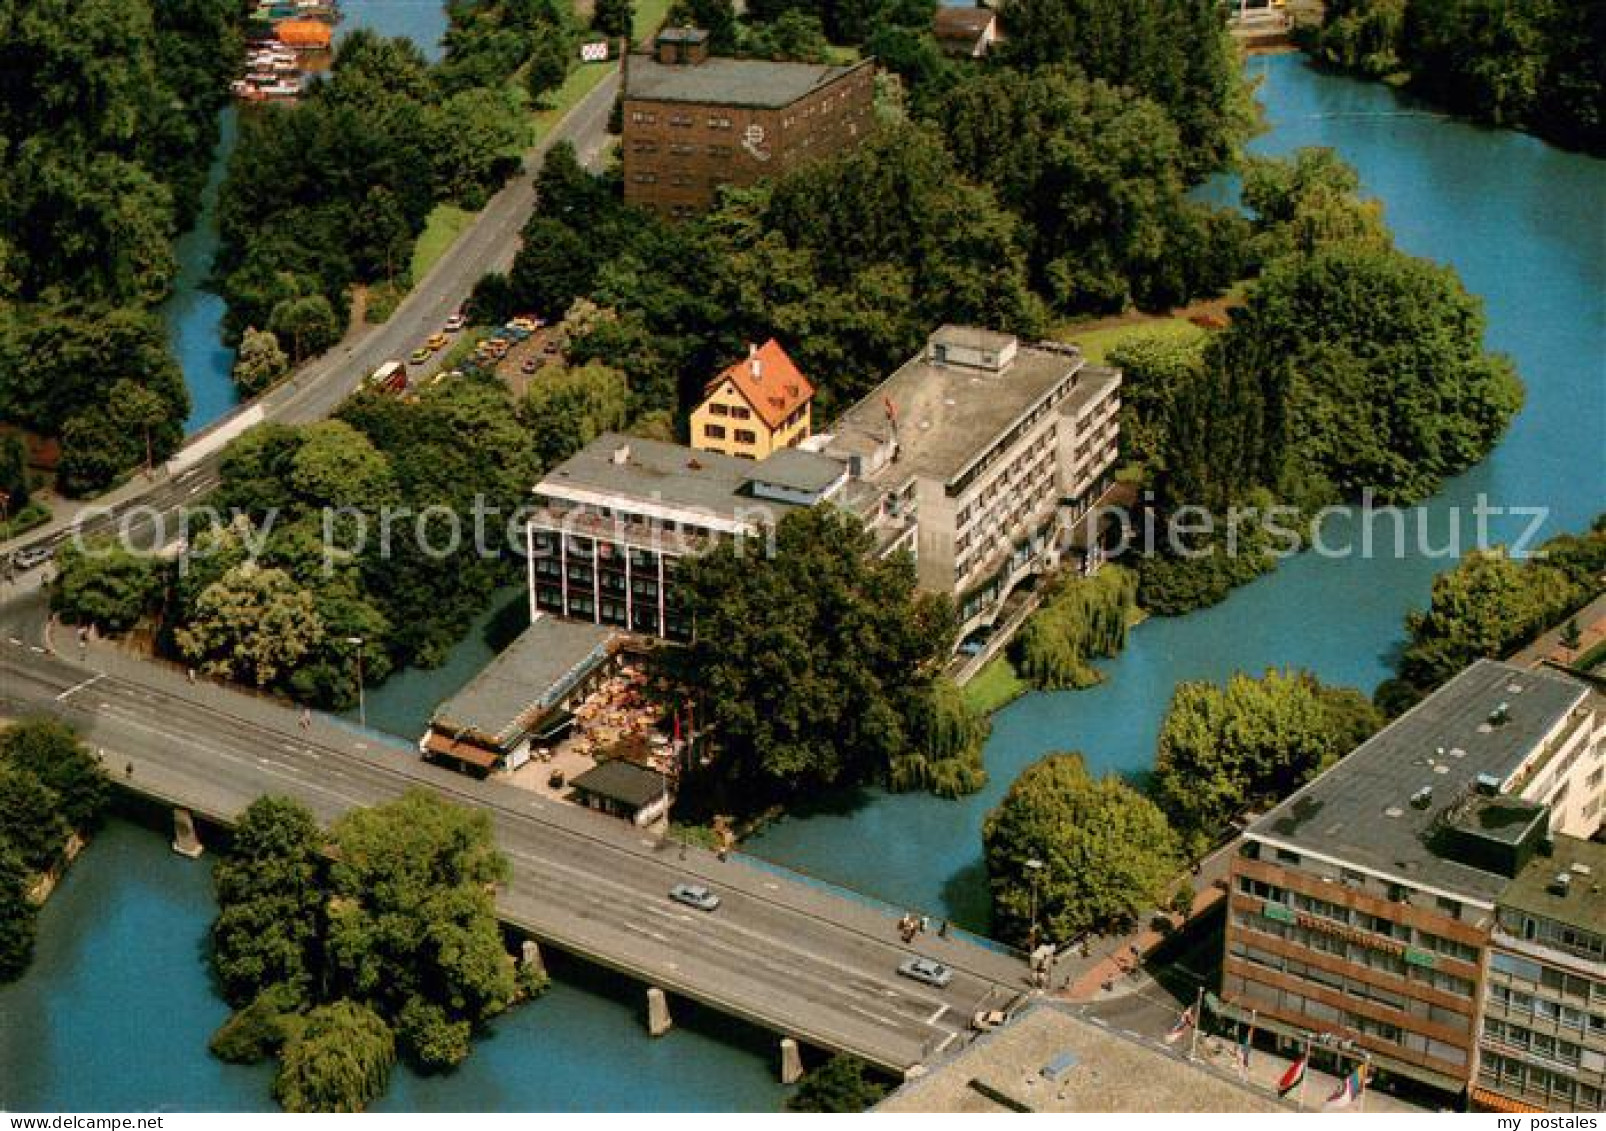 73643744 Heilbronn Neckar Insel Hotel Friedrich Ebert Bruecke Fliegeraufnahme He - Heilbronn